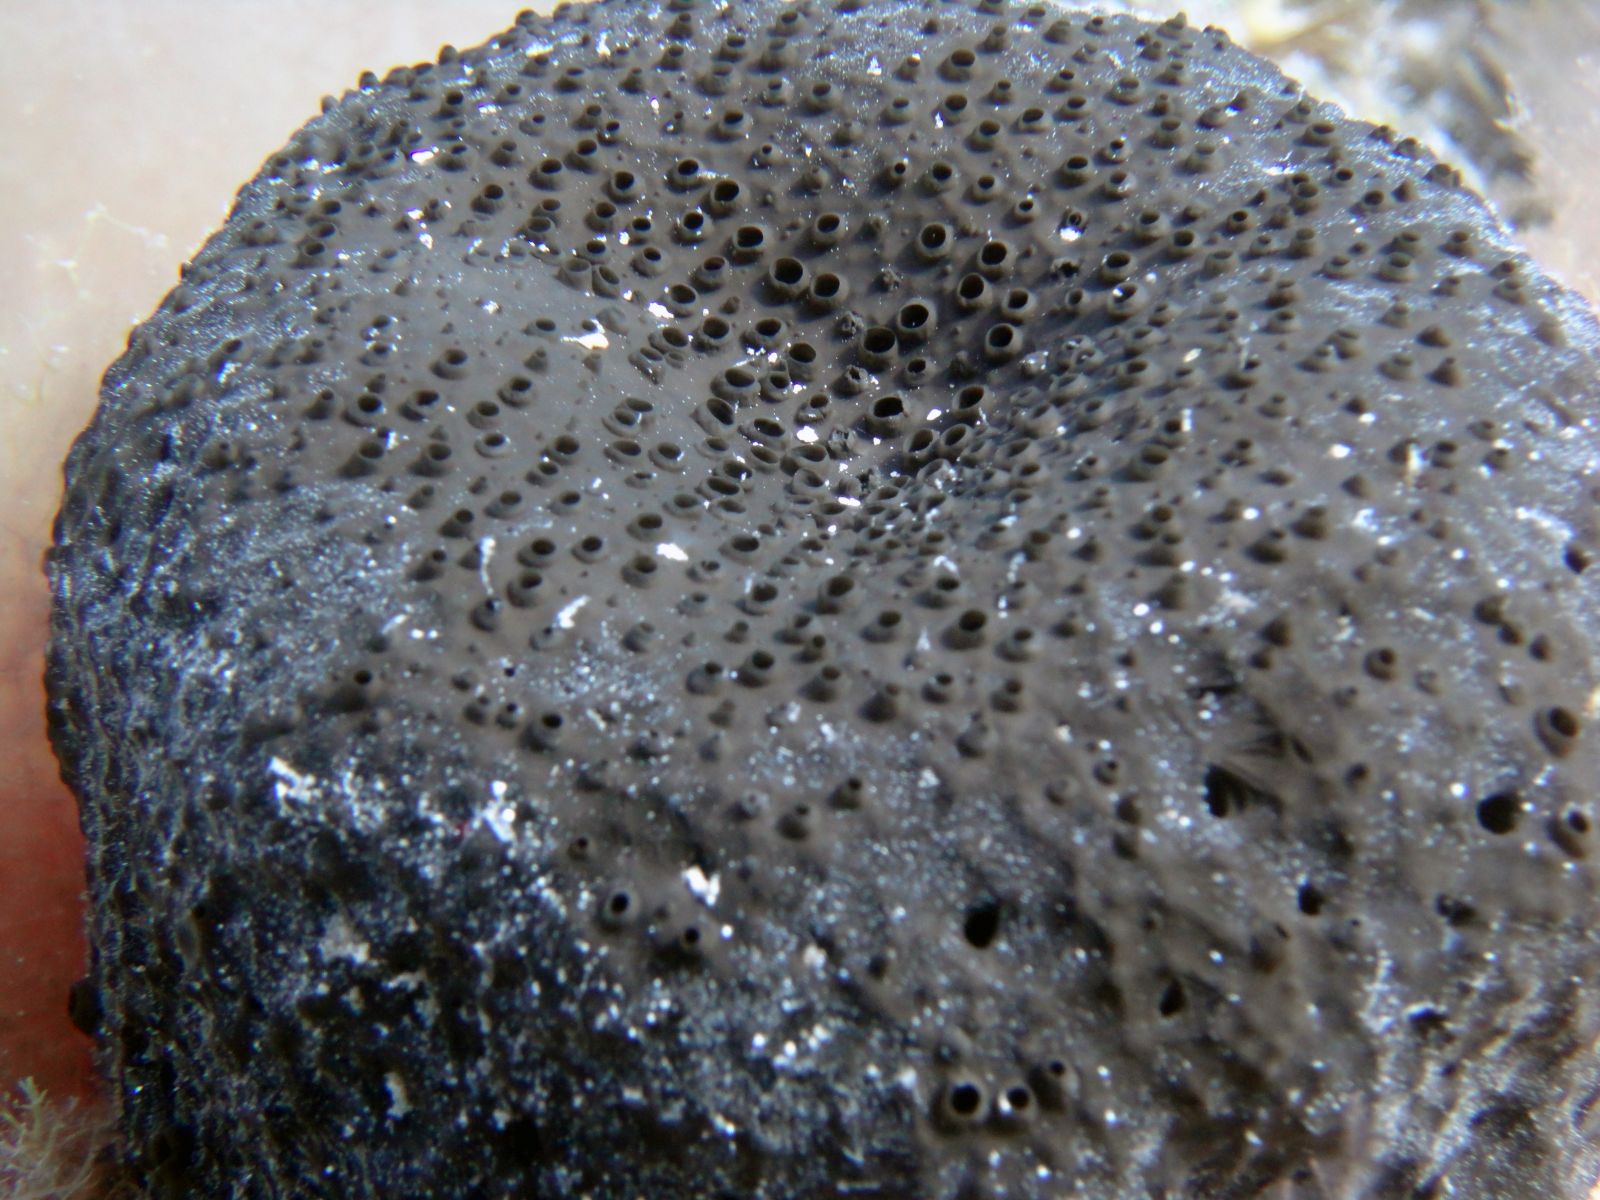 Sarcotragus spinosulus (black leather sponge) - Sea-Nature Studies